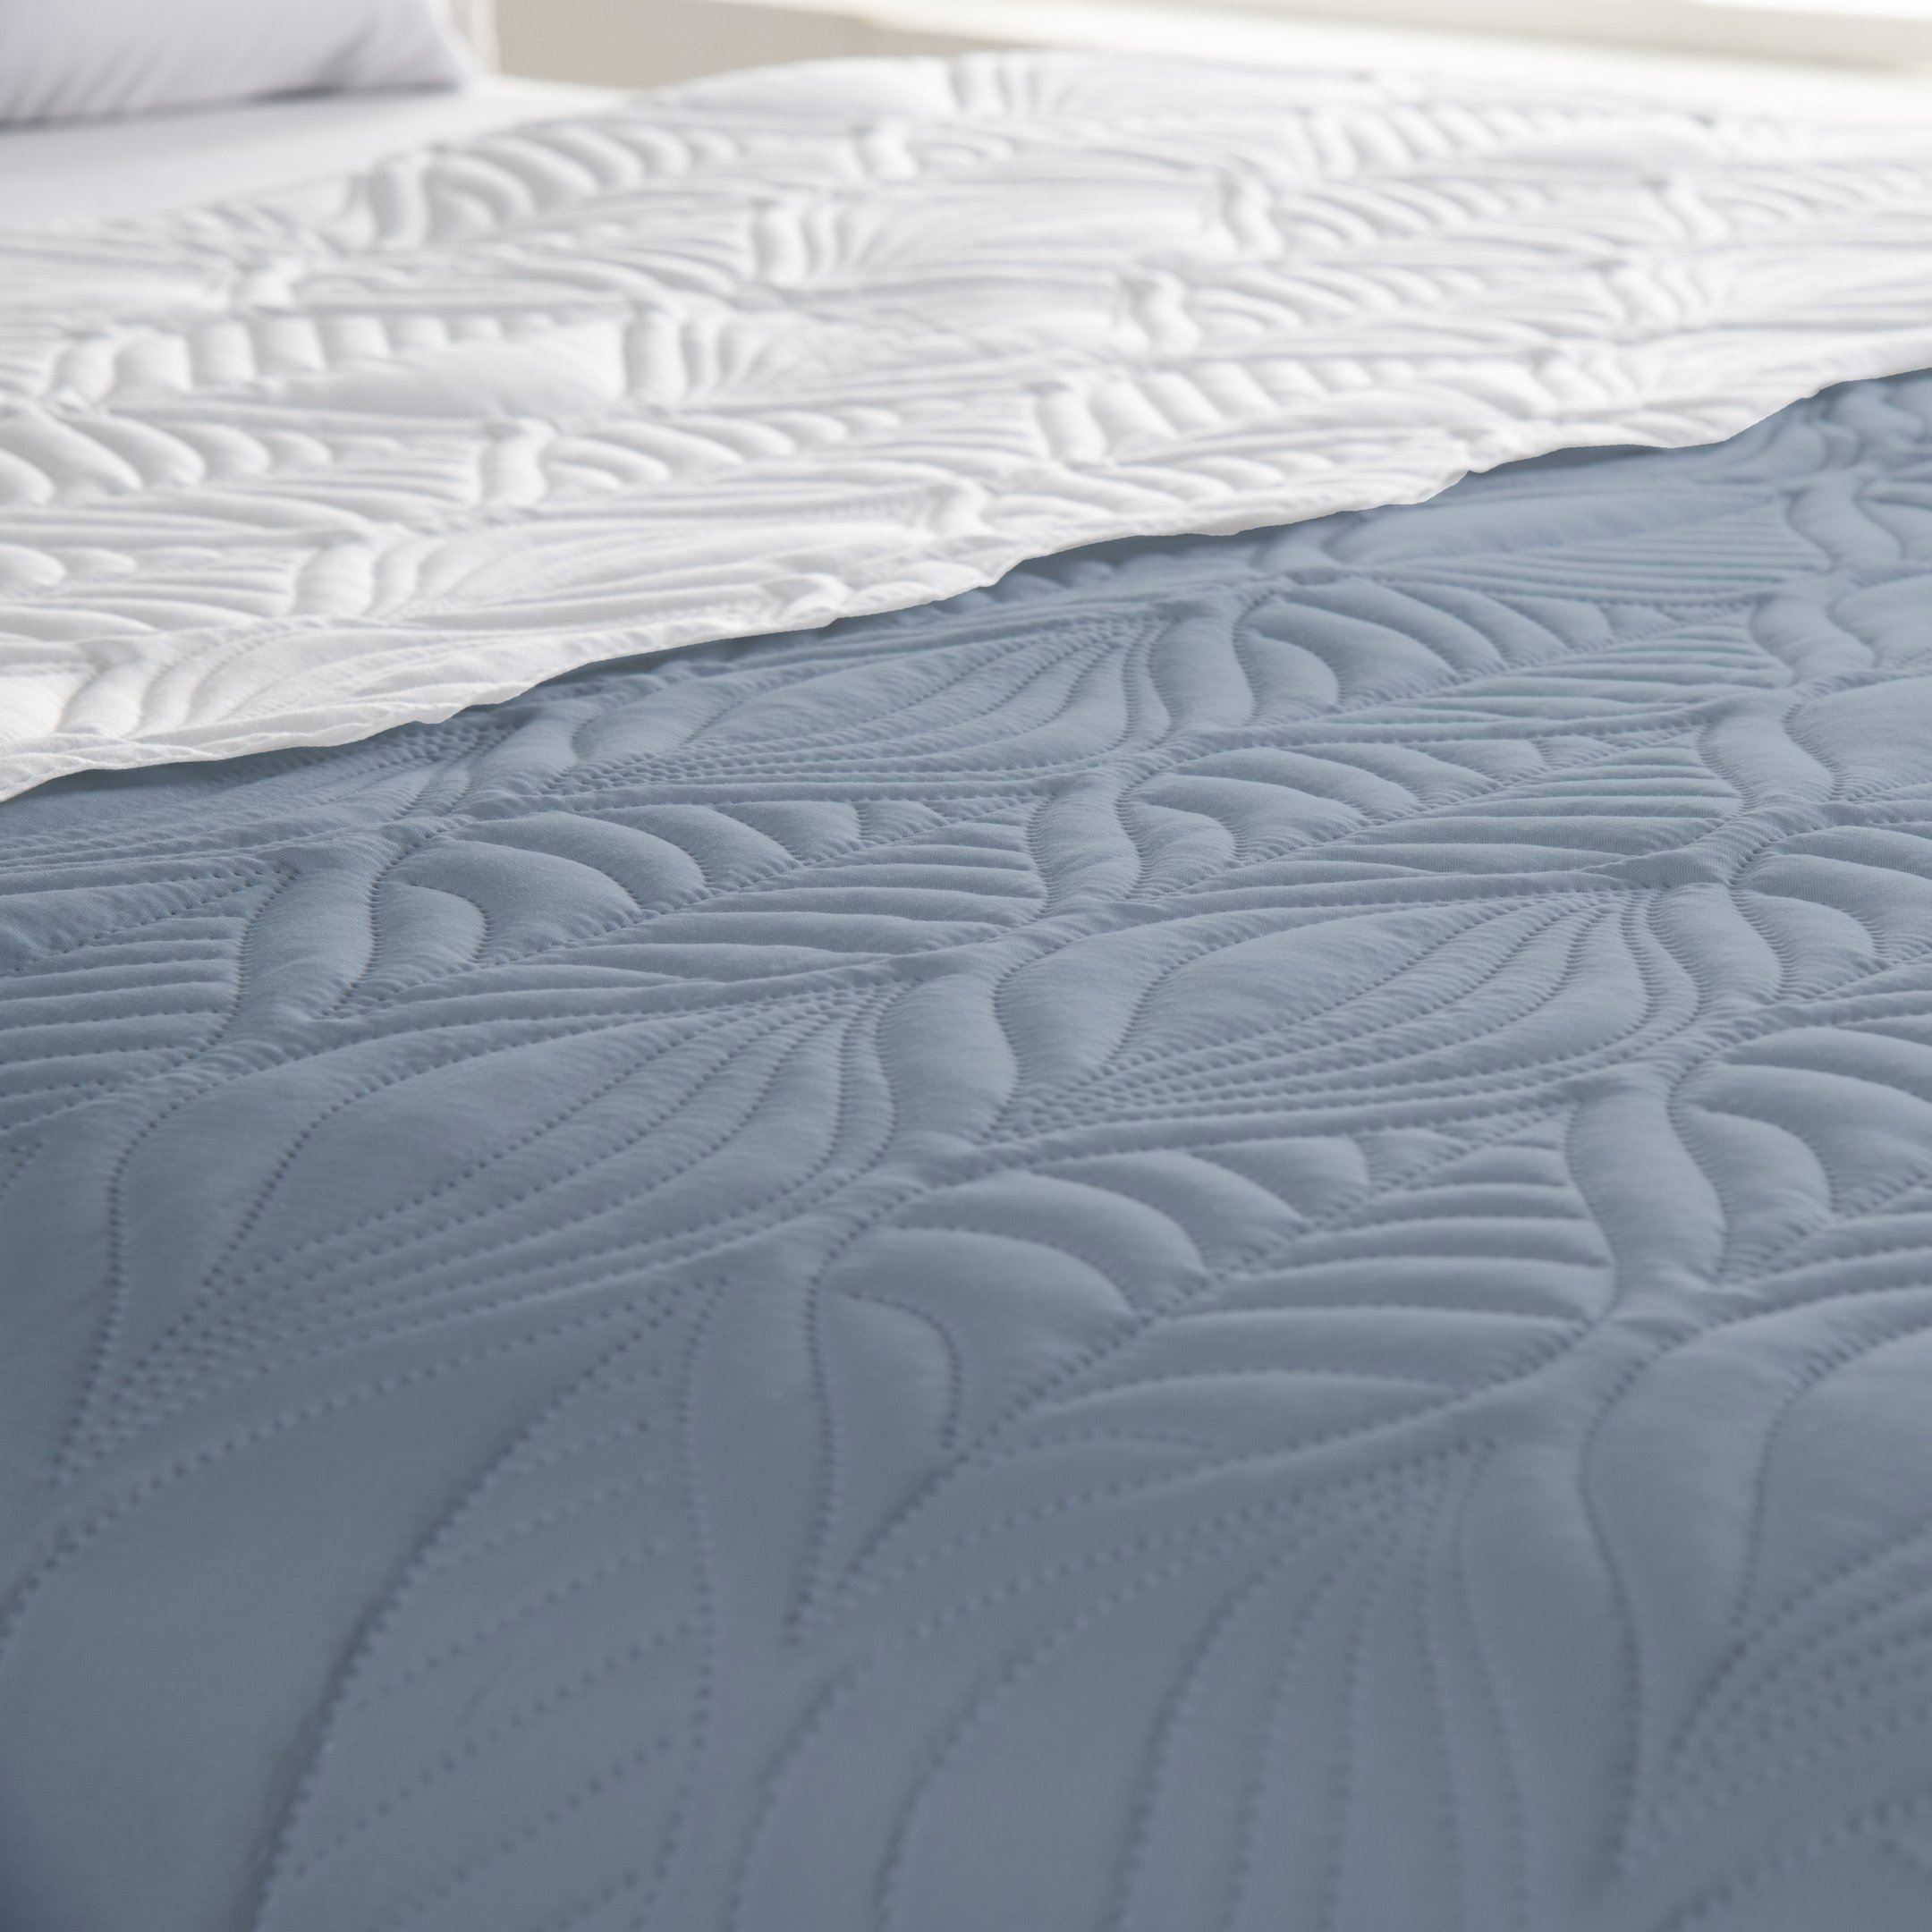 cobertor tropical de solteiro dupla face 220cm x 160cm cobre leito ultrassonico - 2